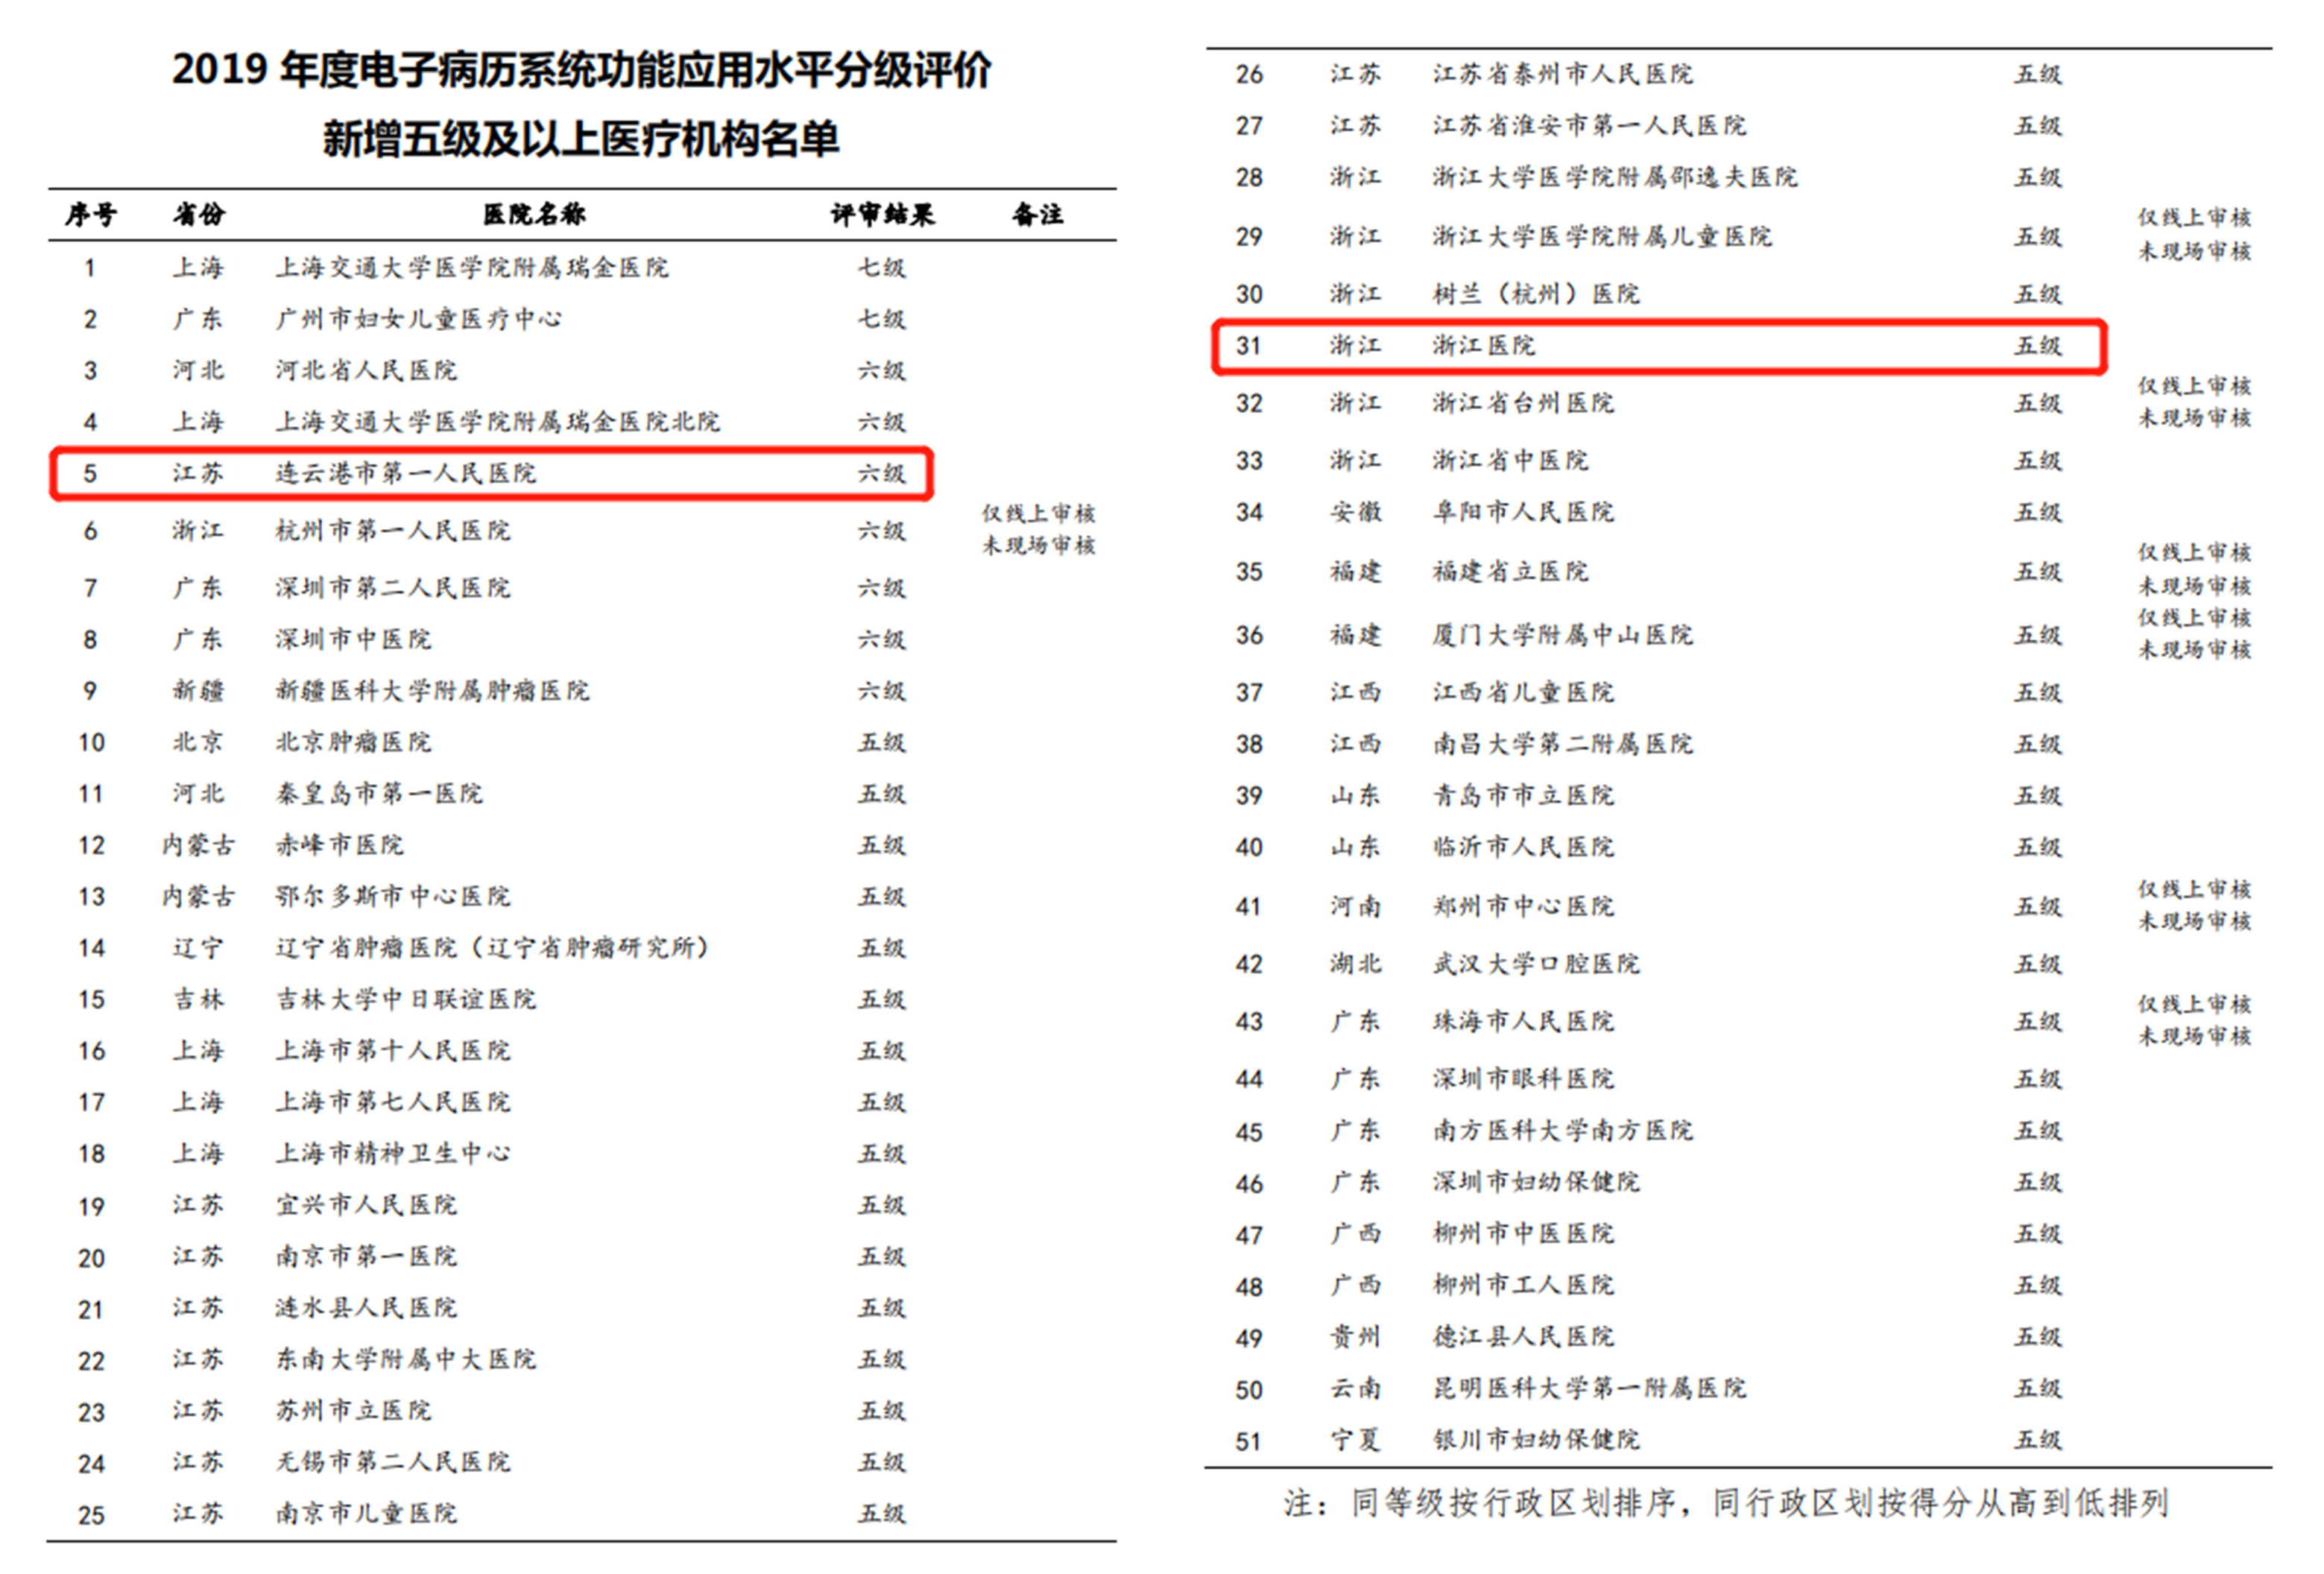 祝贺连云港市第一人民医院和浙江医院通过电子病历6级和5级评审